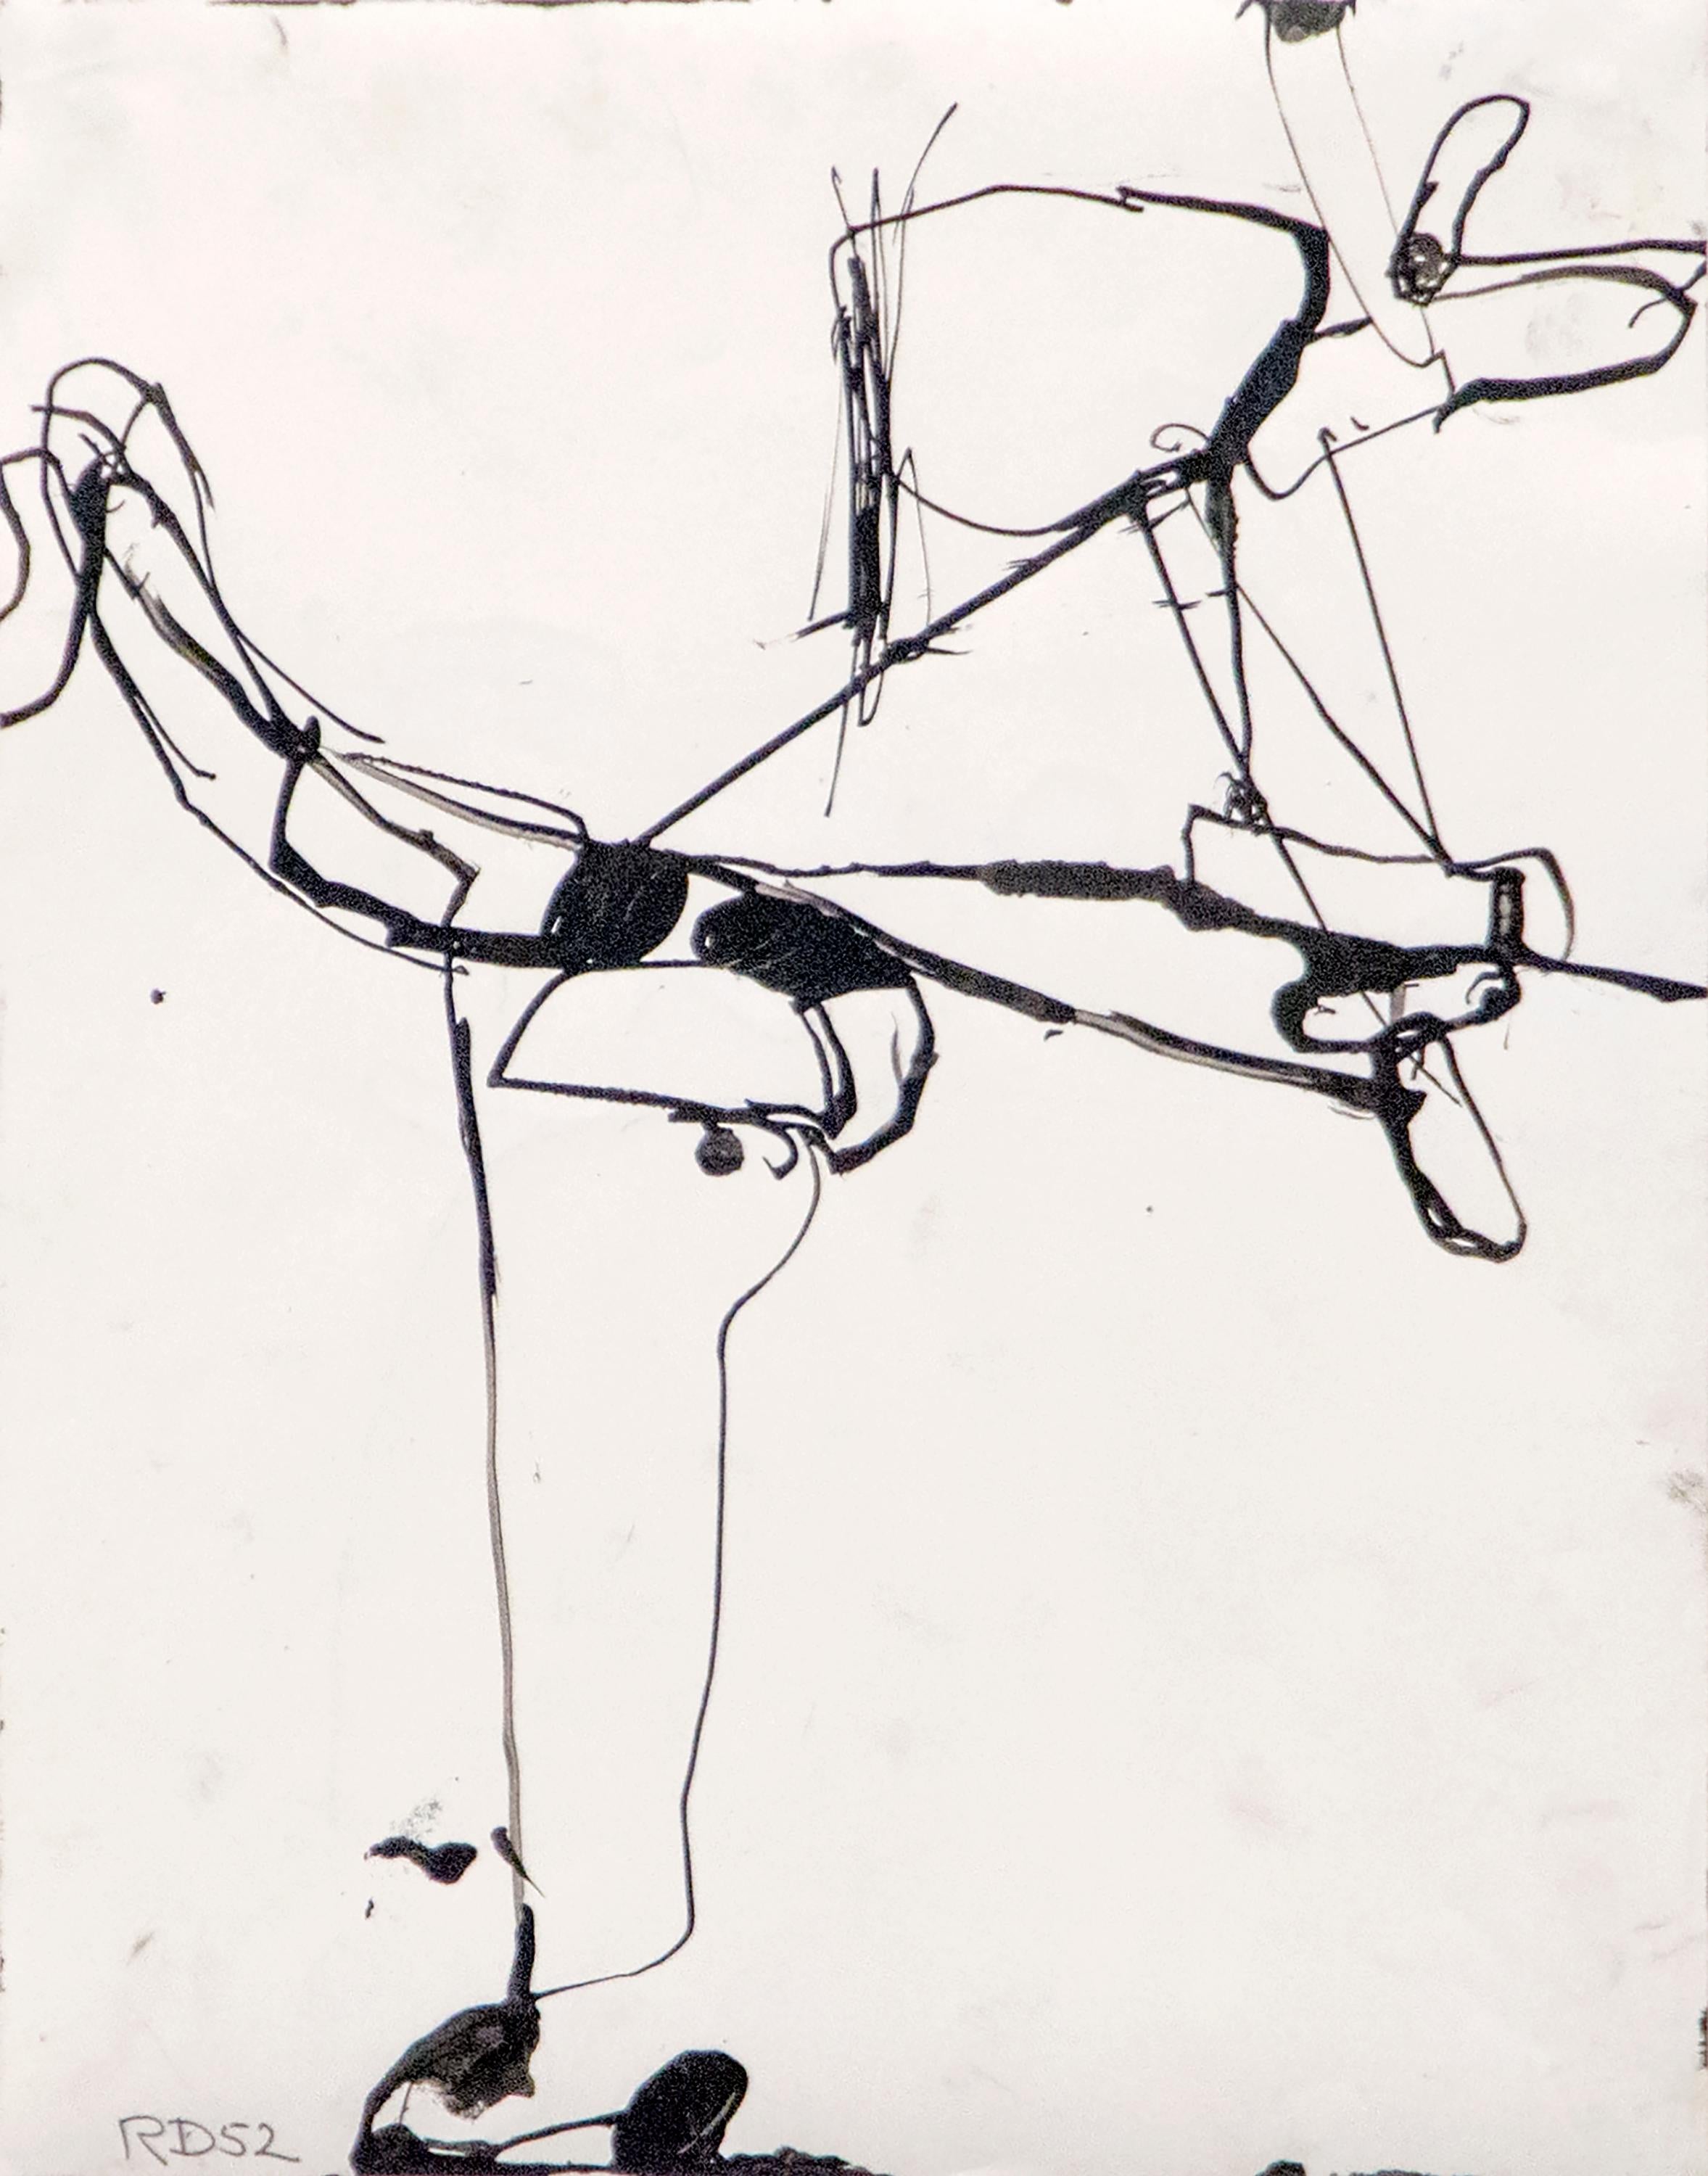 Abstract Drawing Richard Diebenkorn - Sans titre (Série Urbana)